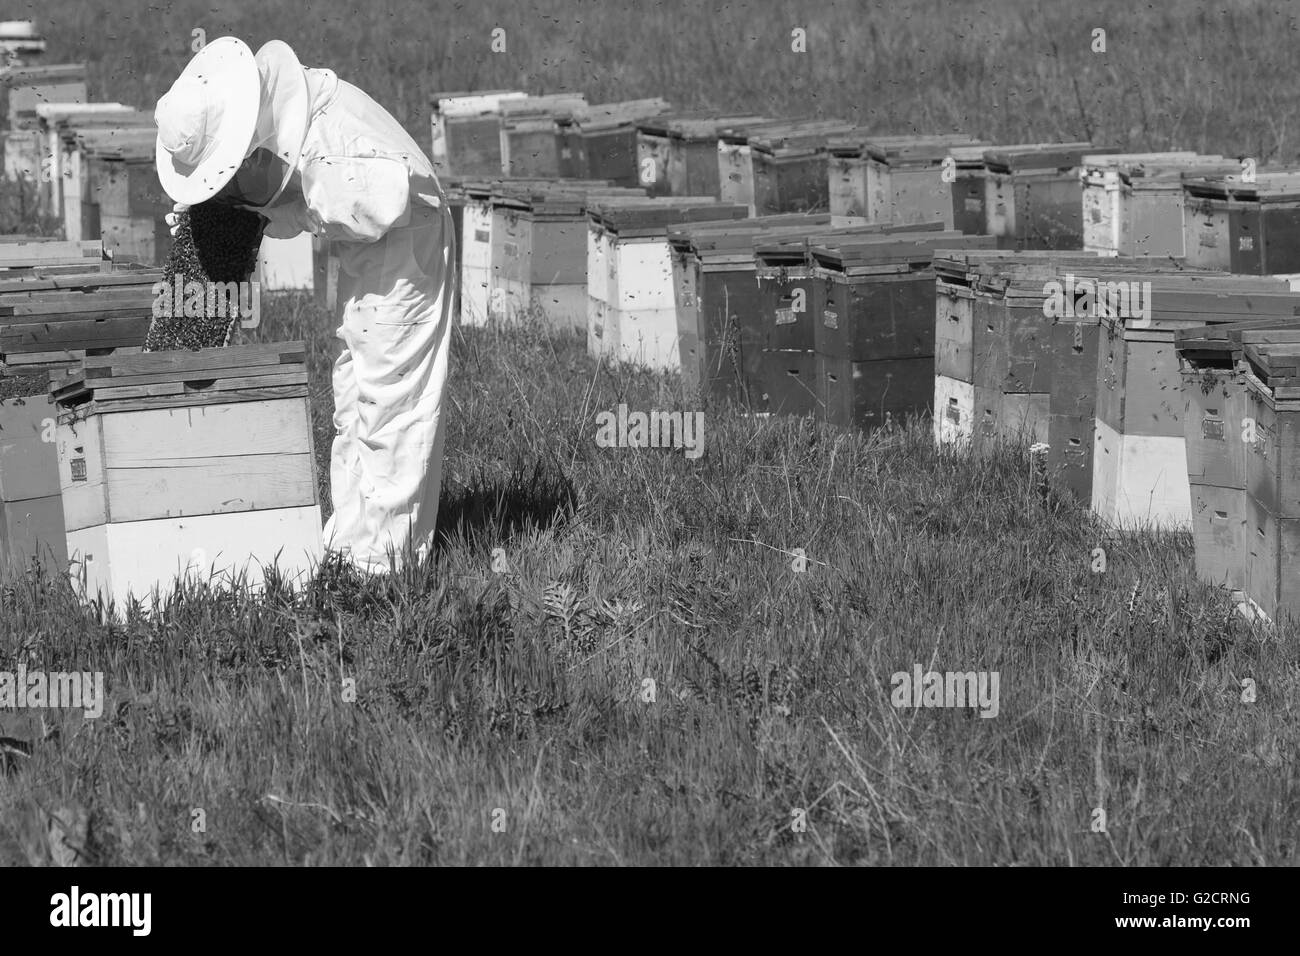 horizontale Seitenansicht des Imkers in einen Ehite Schutz Anzug Überprüfung des Honig Kammes im Bienenstock Stockfoto